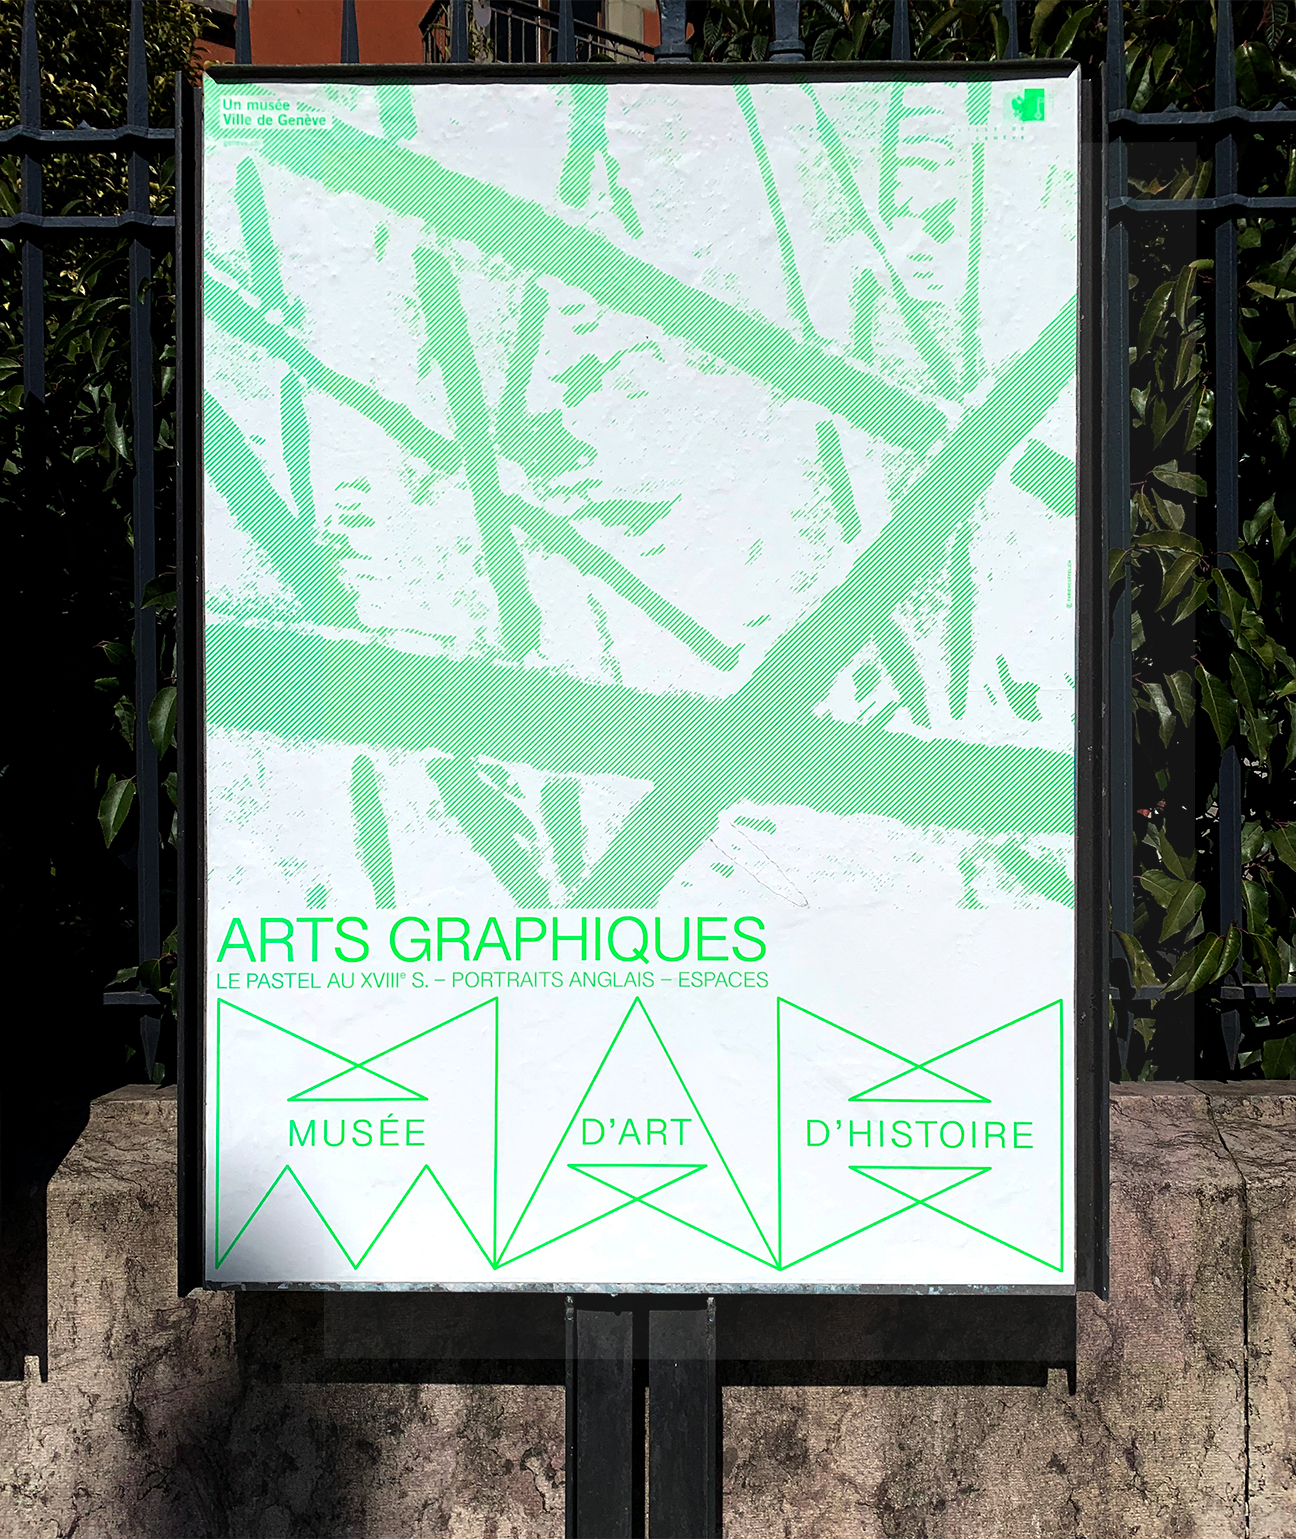 Fabien-cuffel-typographiste-graphiste-geveve-MAH_ARTS_GRAPHIQUES_AFFICHE_F4